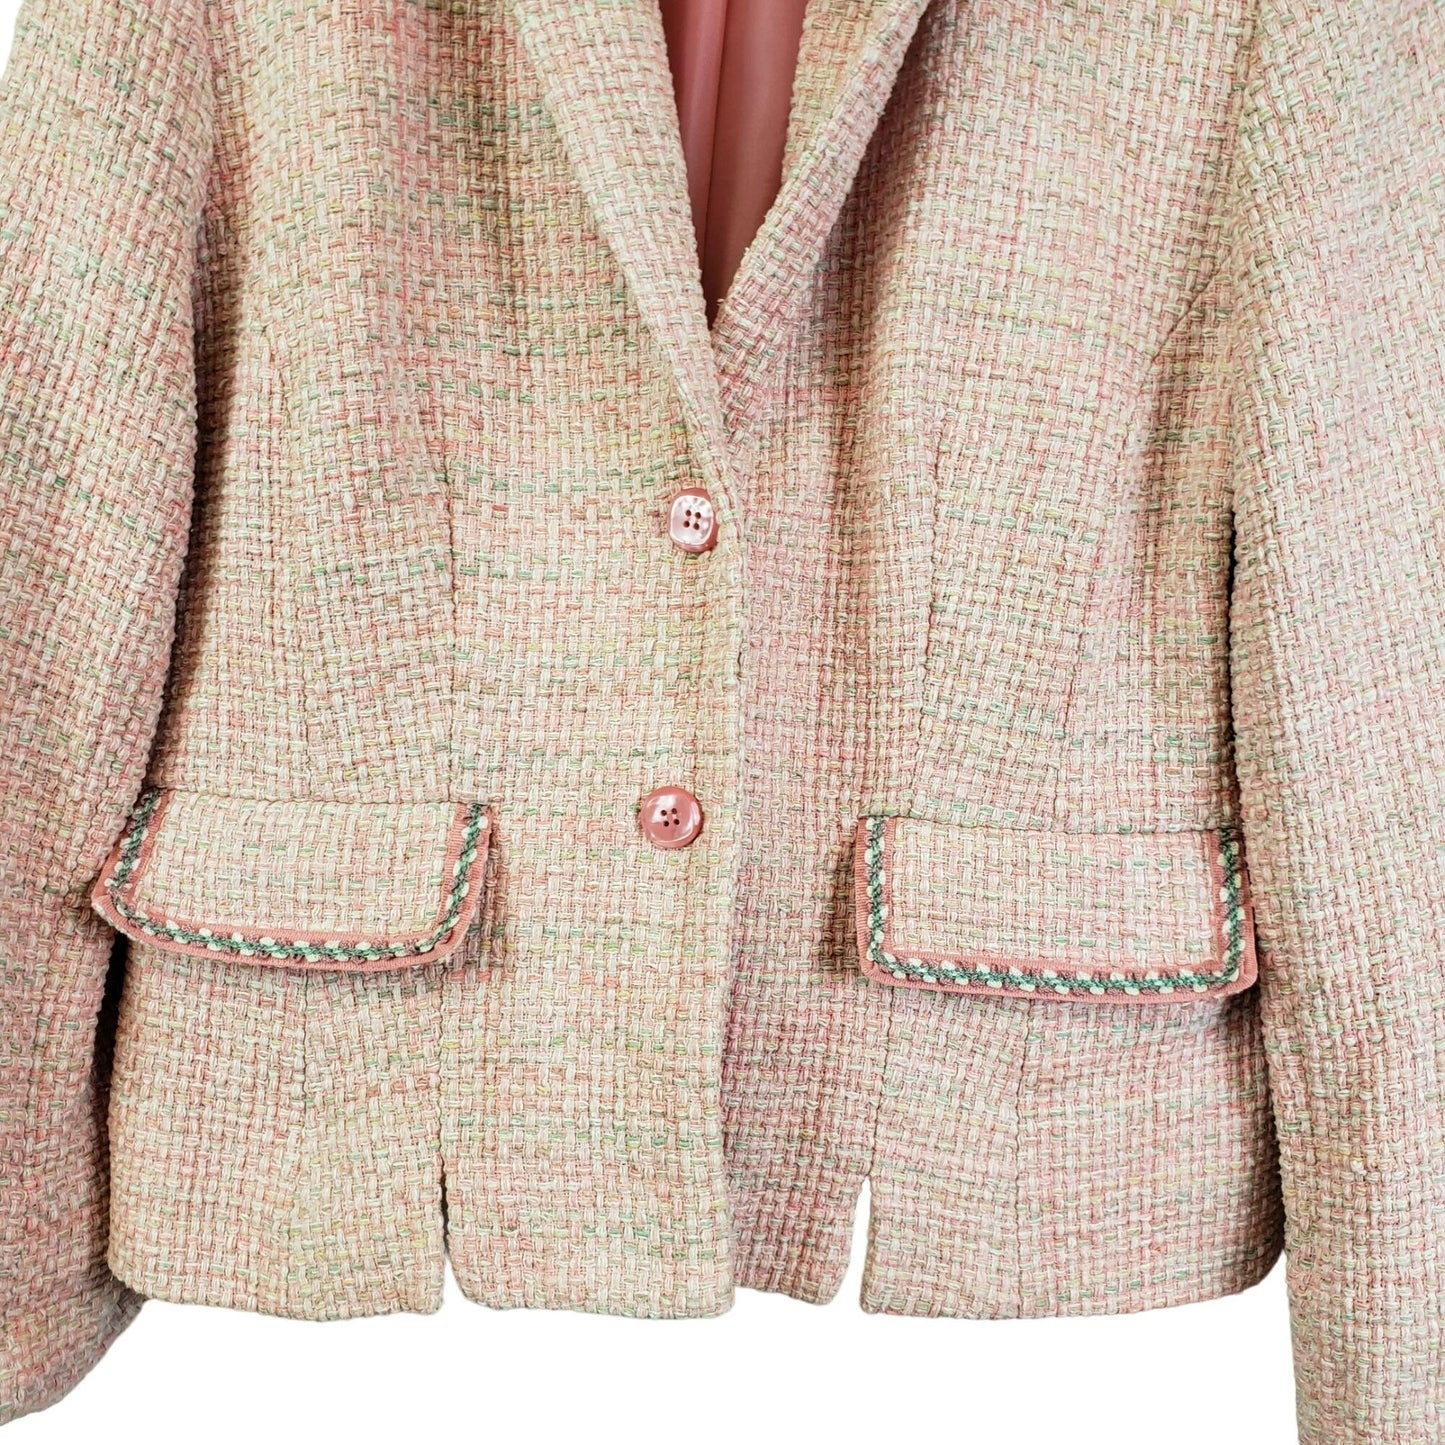 Pendleton Silk Tweed 2 Button Blazer Jacket Size 8